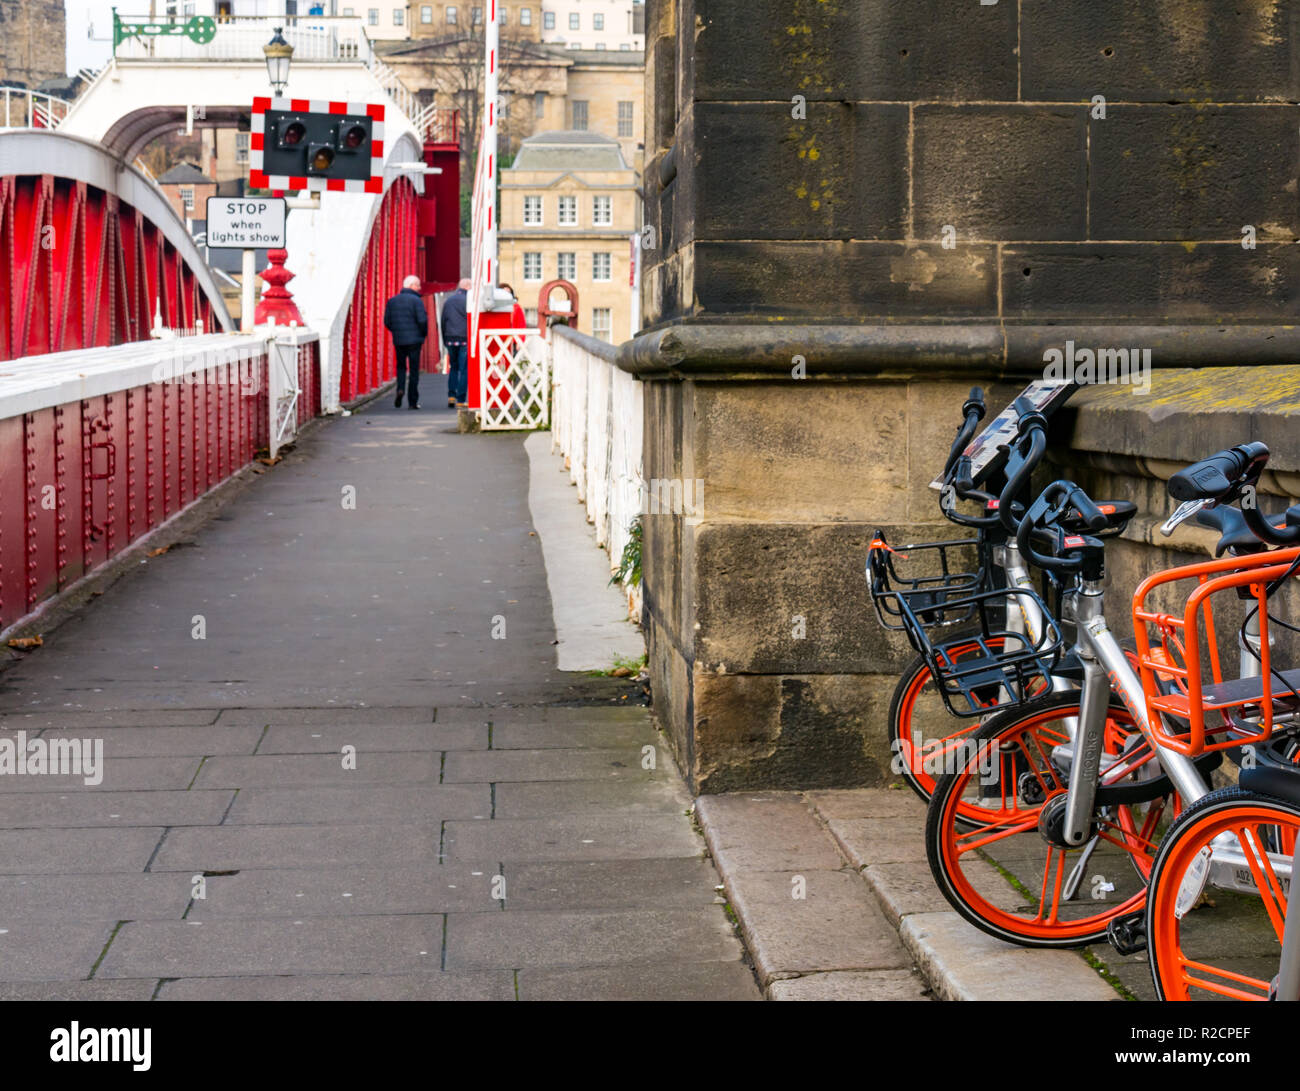 Old swing bridge with Mobike rental bikes, River Tyne, Newcastle Upon Tyne, England, UK Stock Photo